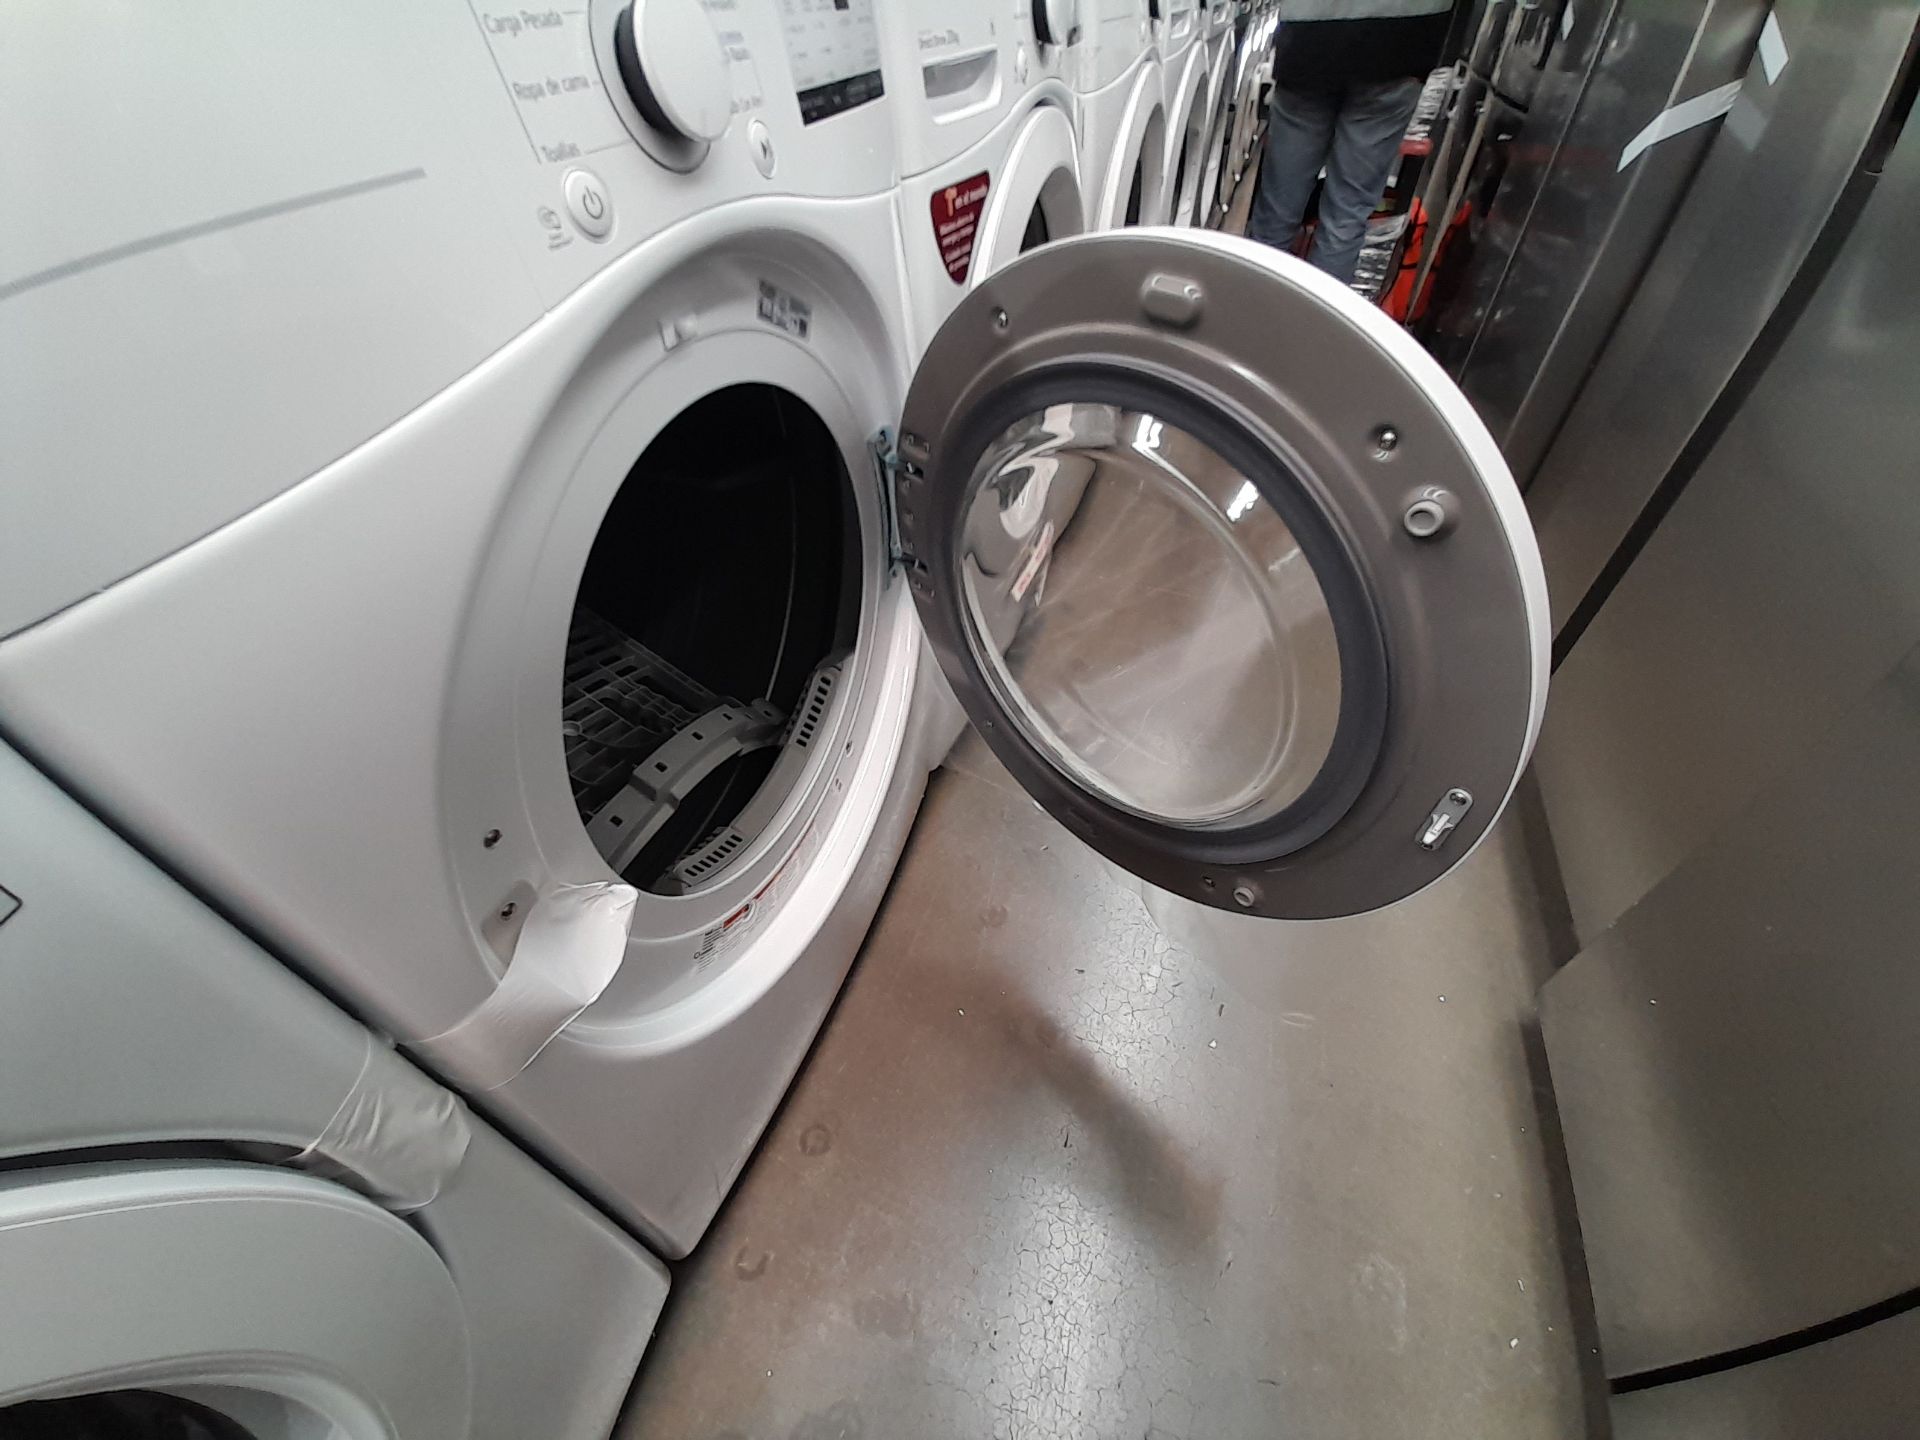 (Nuevo) Lote de 1 lavadora y 1 secadora contiene: 1 lavadora de 20 KG, Marca LG, Modelo WN20WV26W, - Bild 5 aus 6